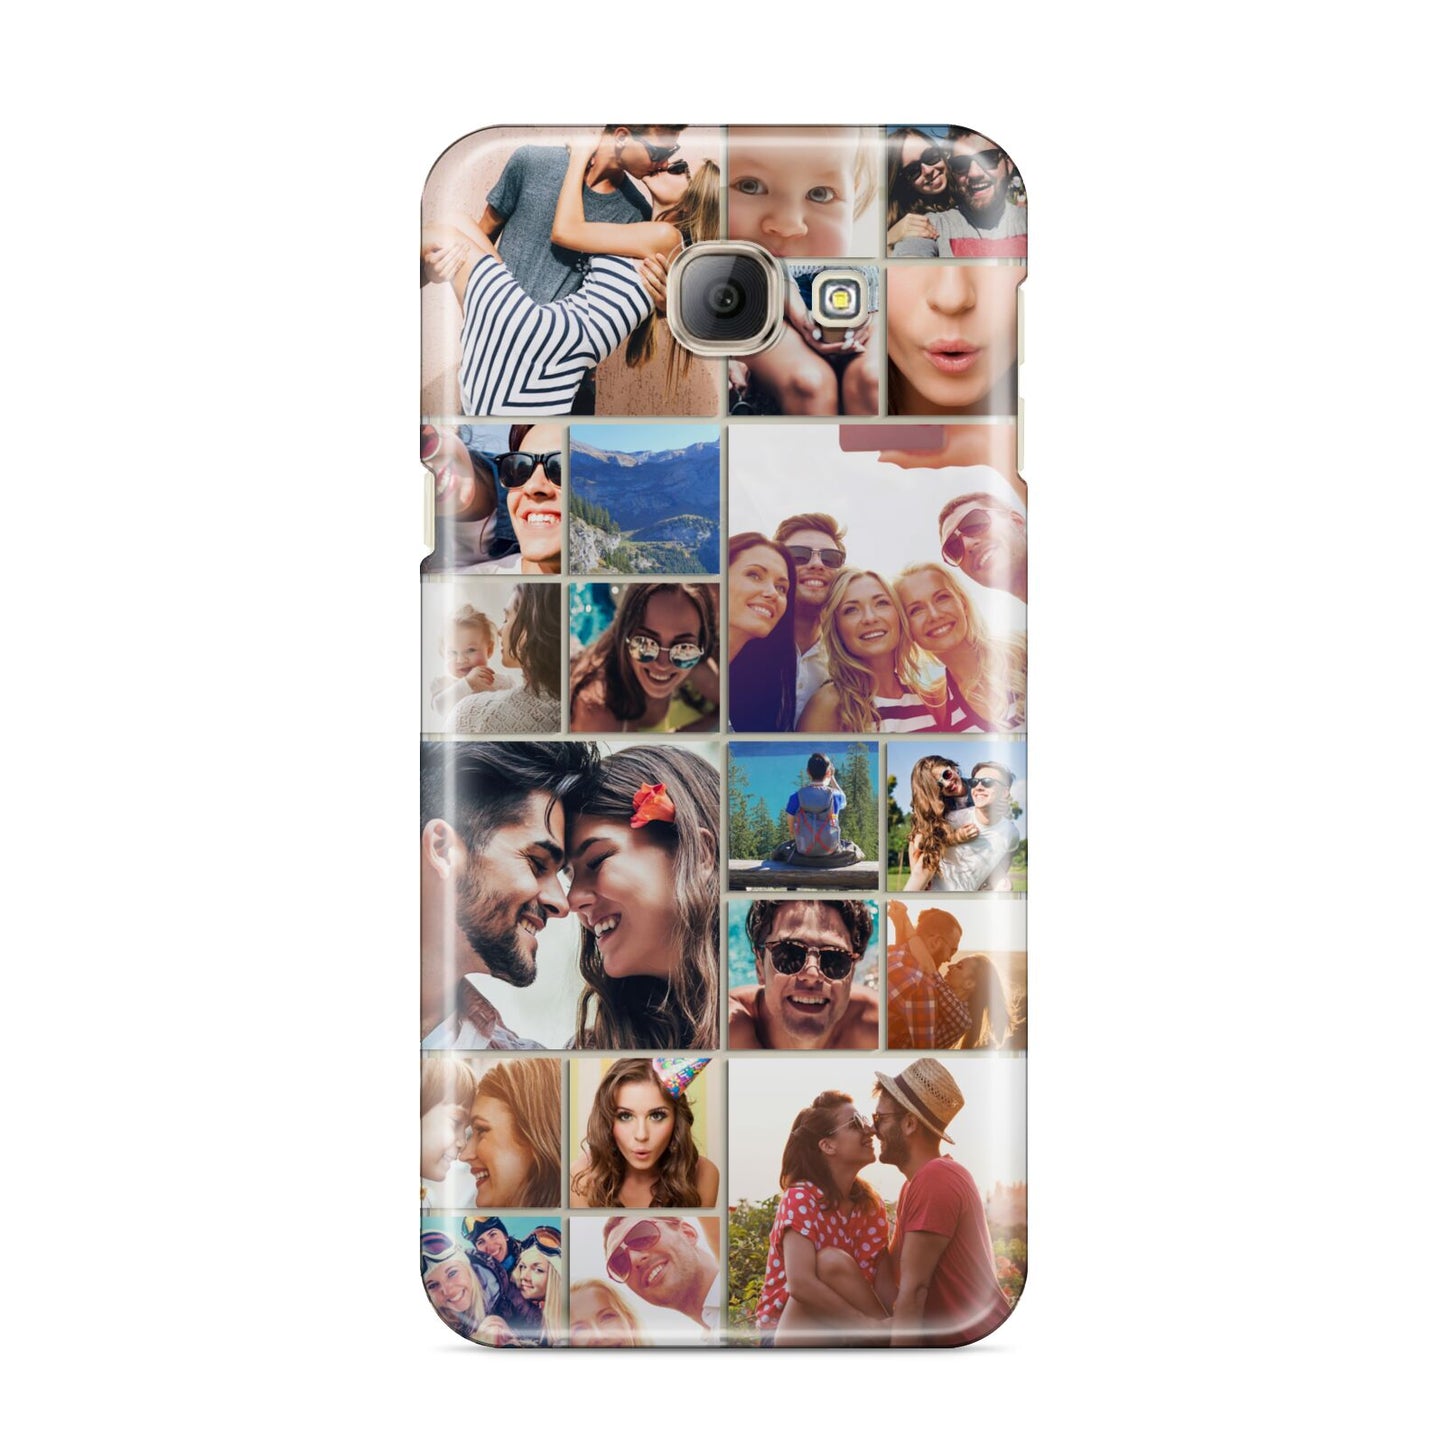 Photo Grid Samsung Galaxy A8 2016 Case